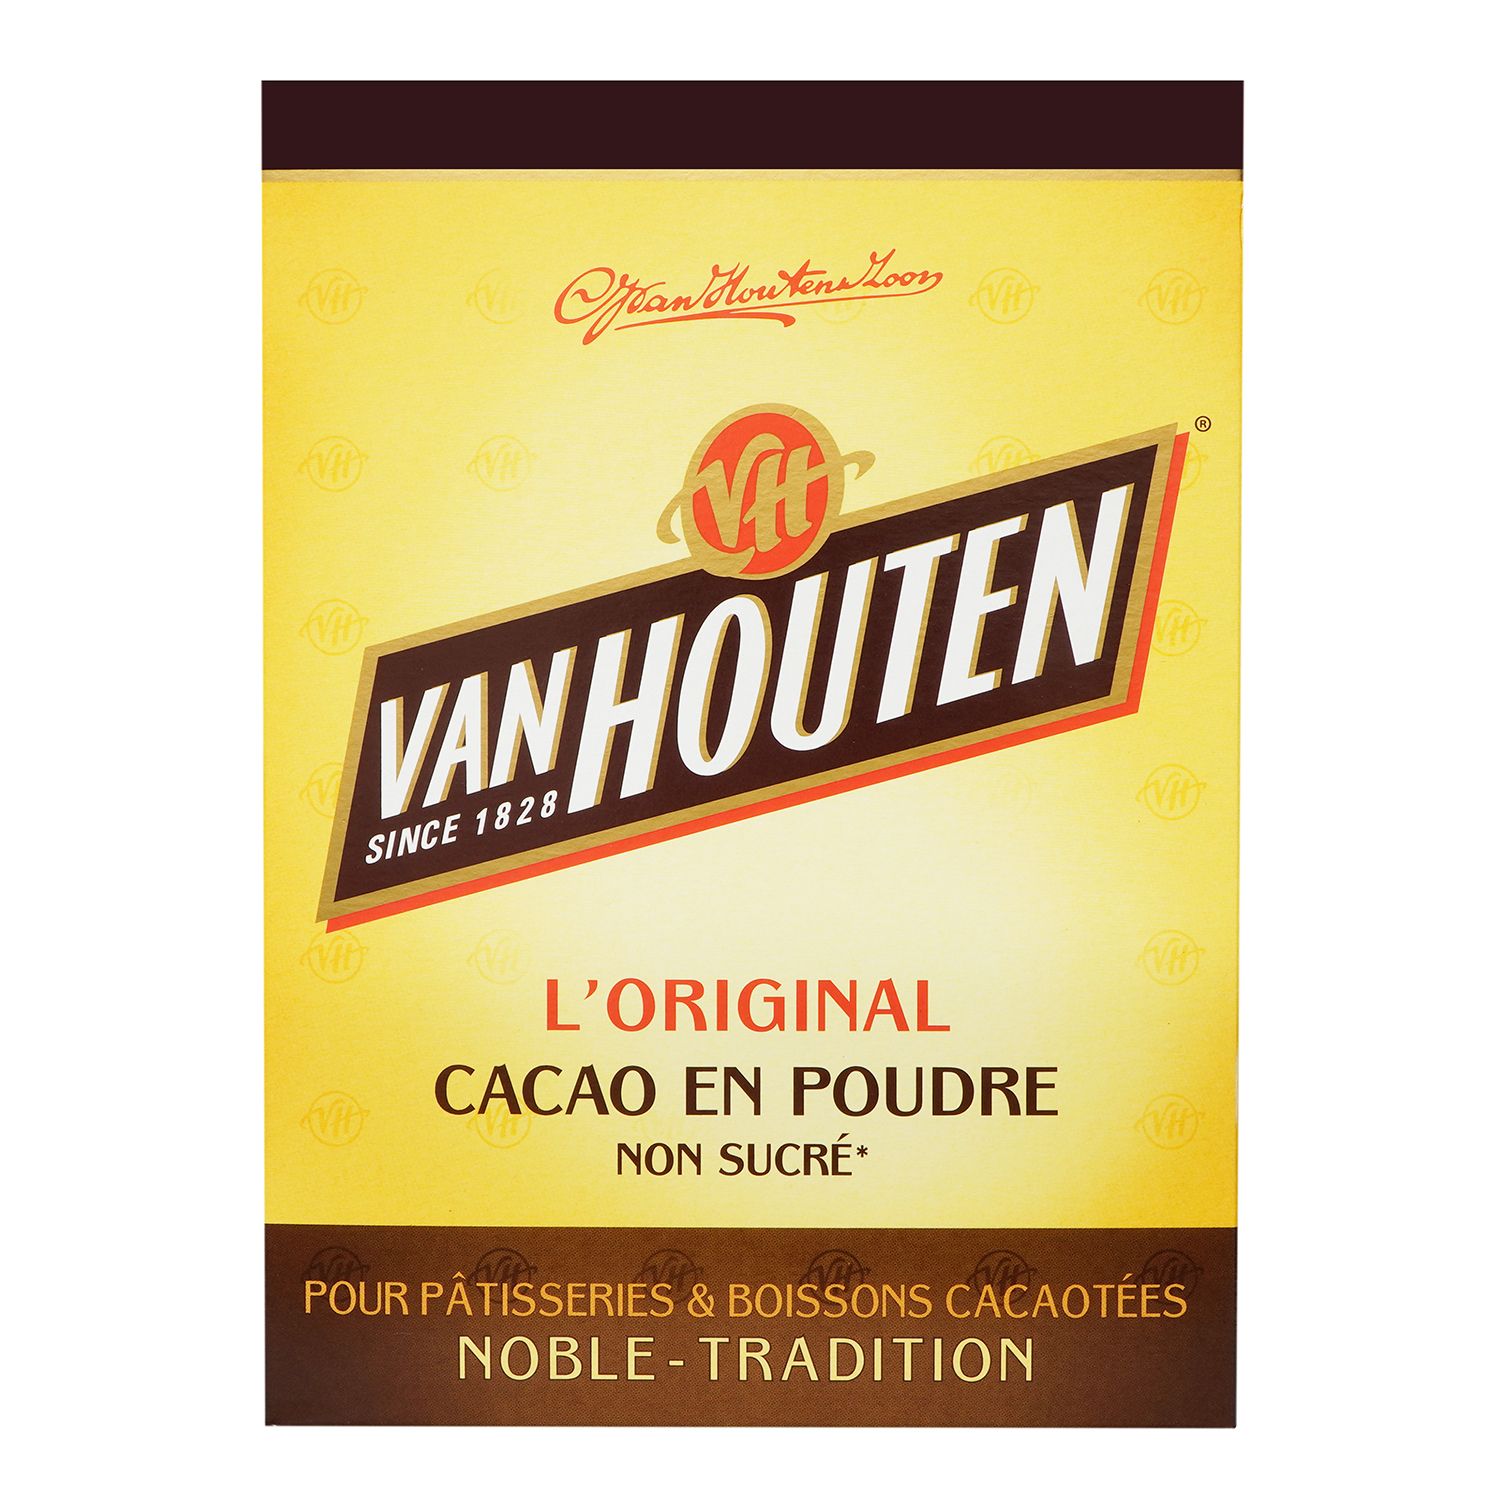 L'original - Cacao en poudre non sucré - Van Houten